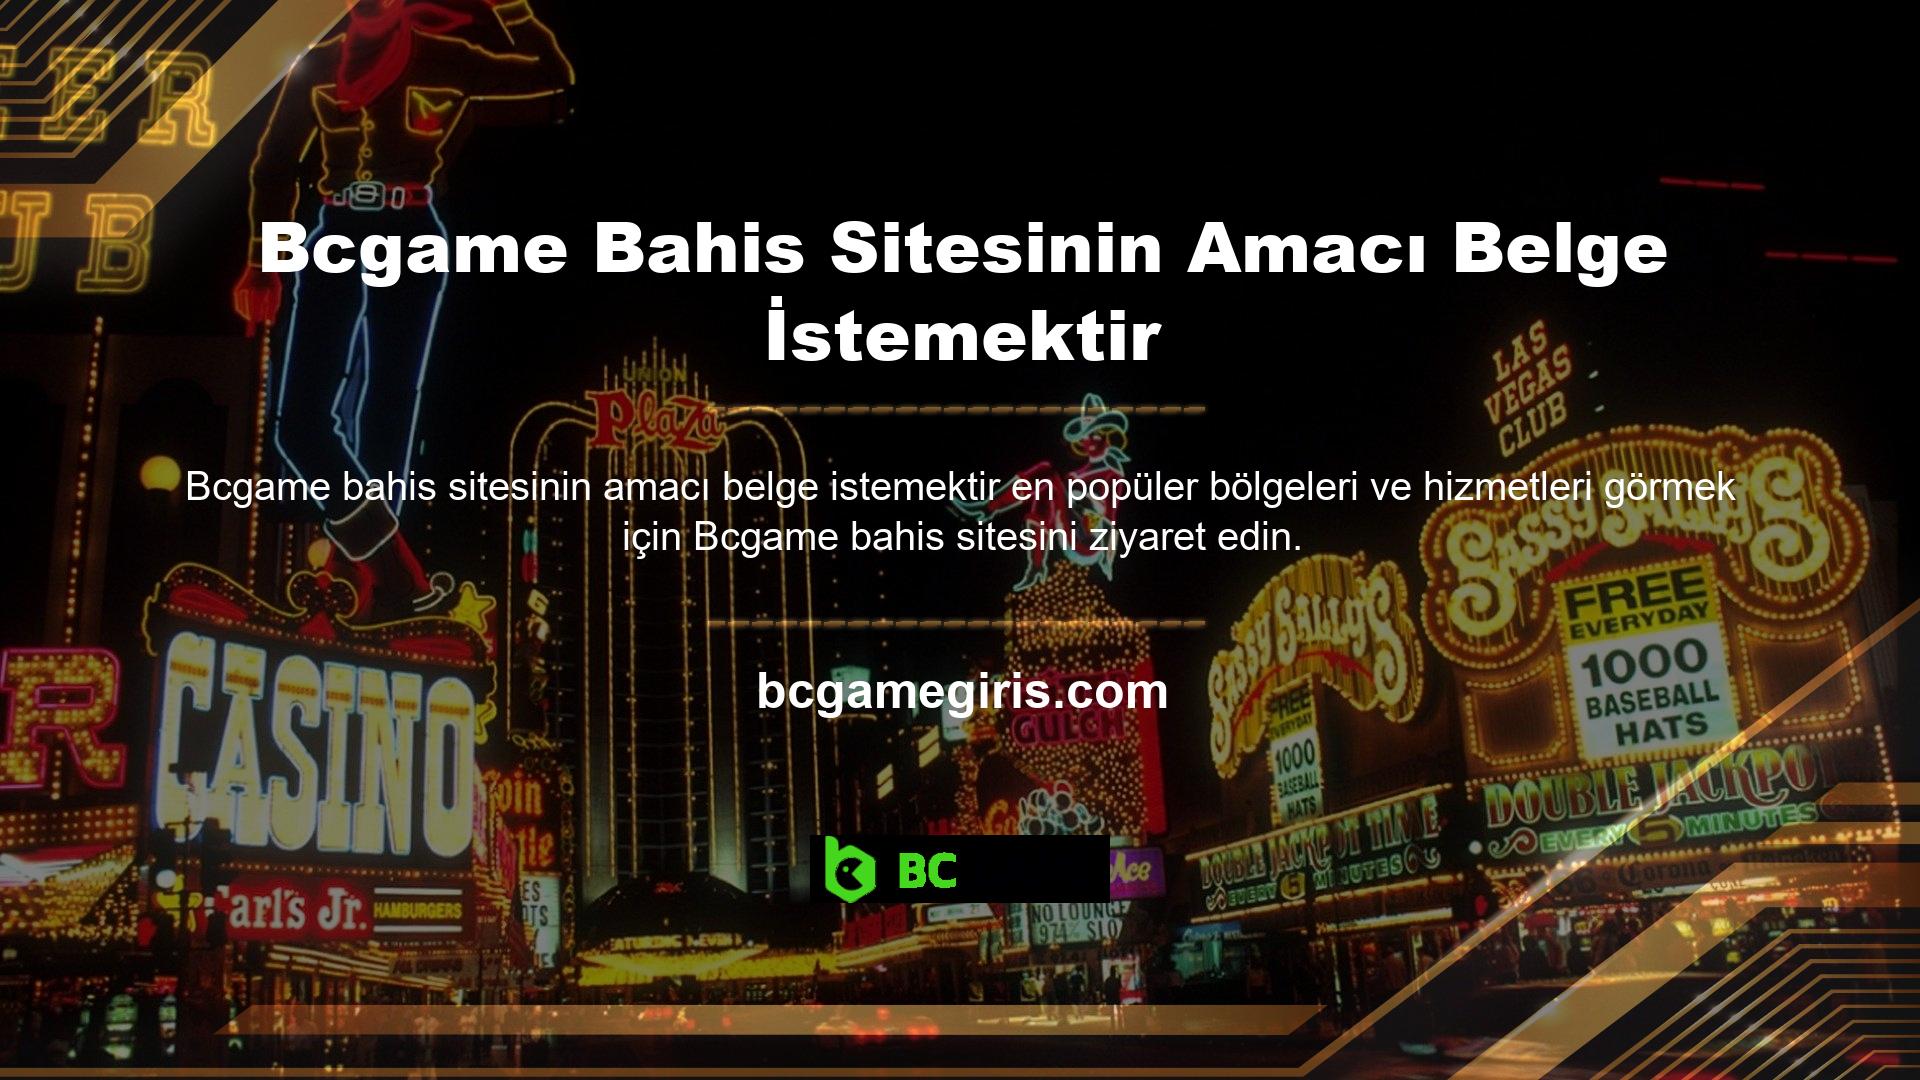 Bcgame casino sitesinin amacı belge istemektir